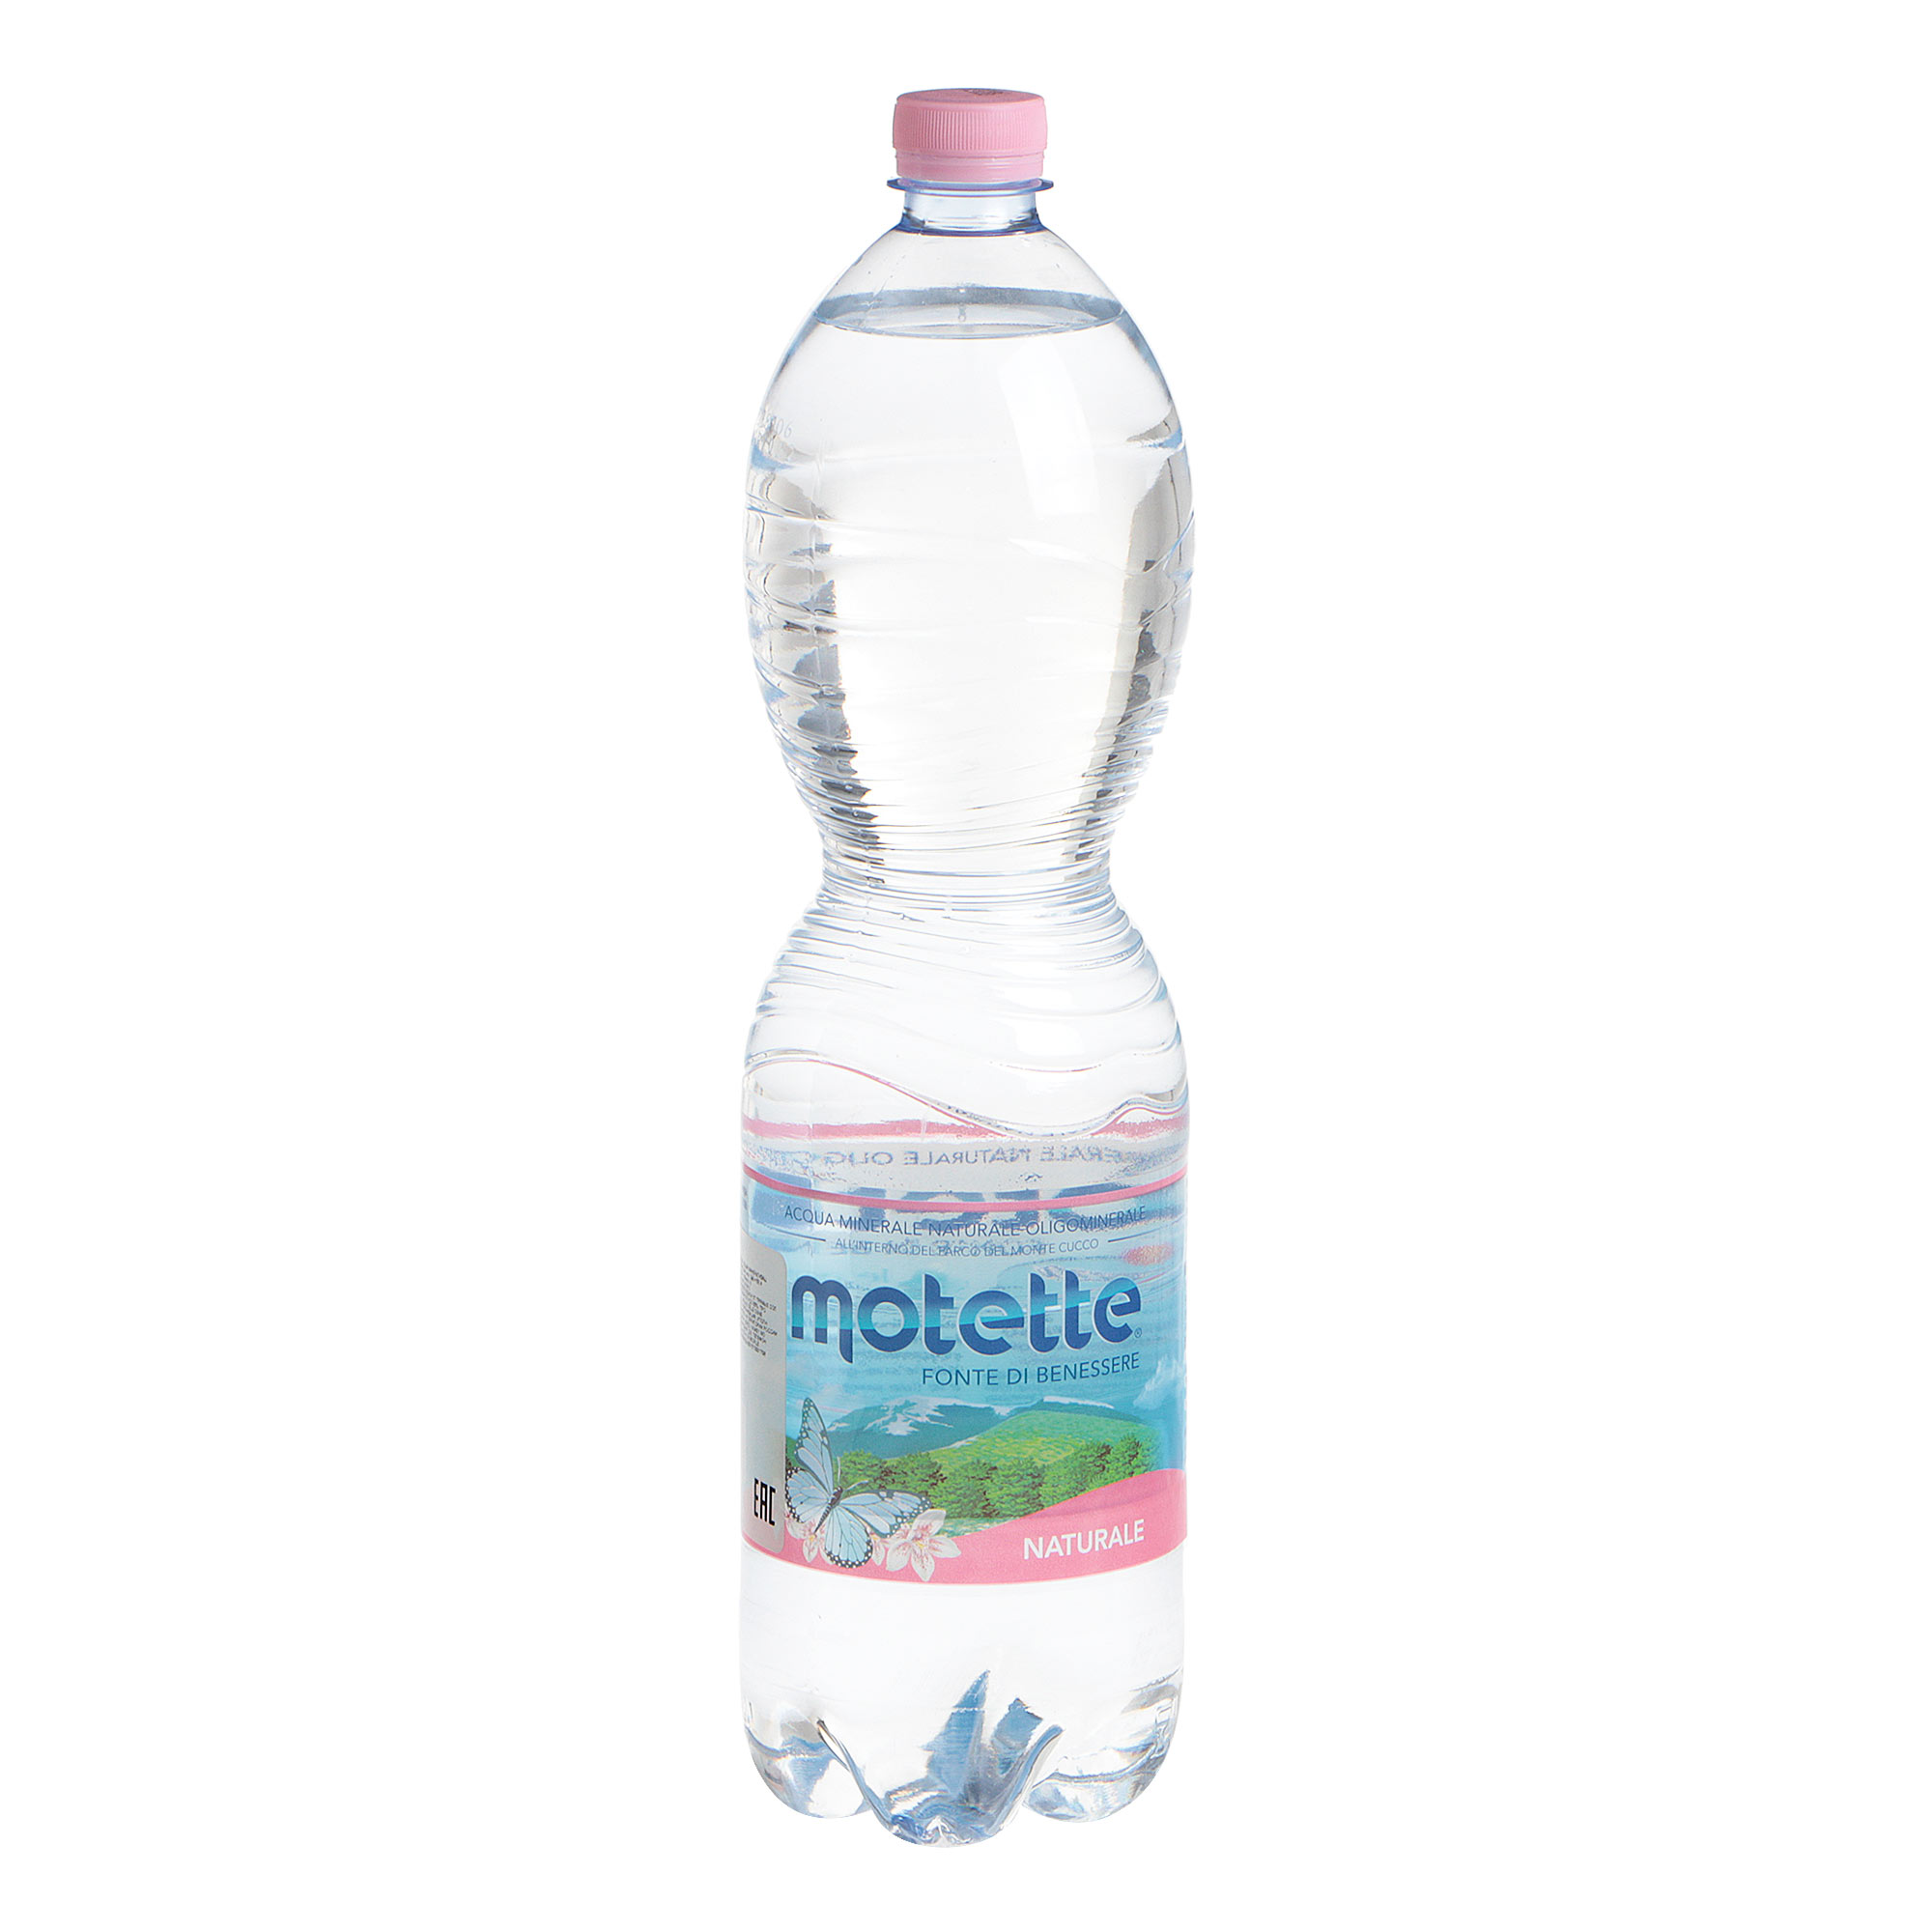 Вода Motette негазированная, 1,5 л